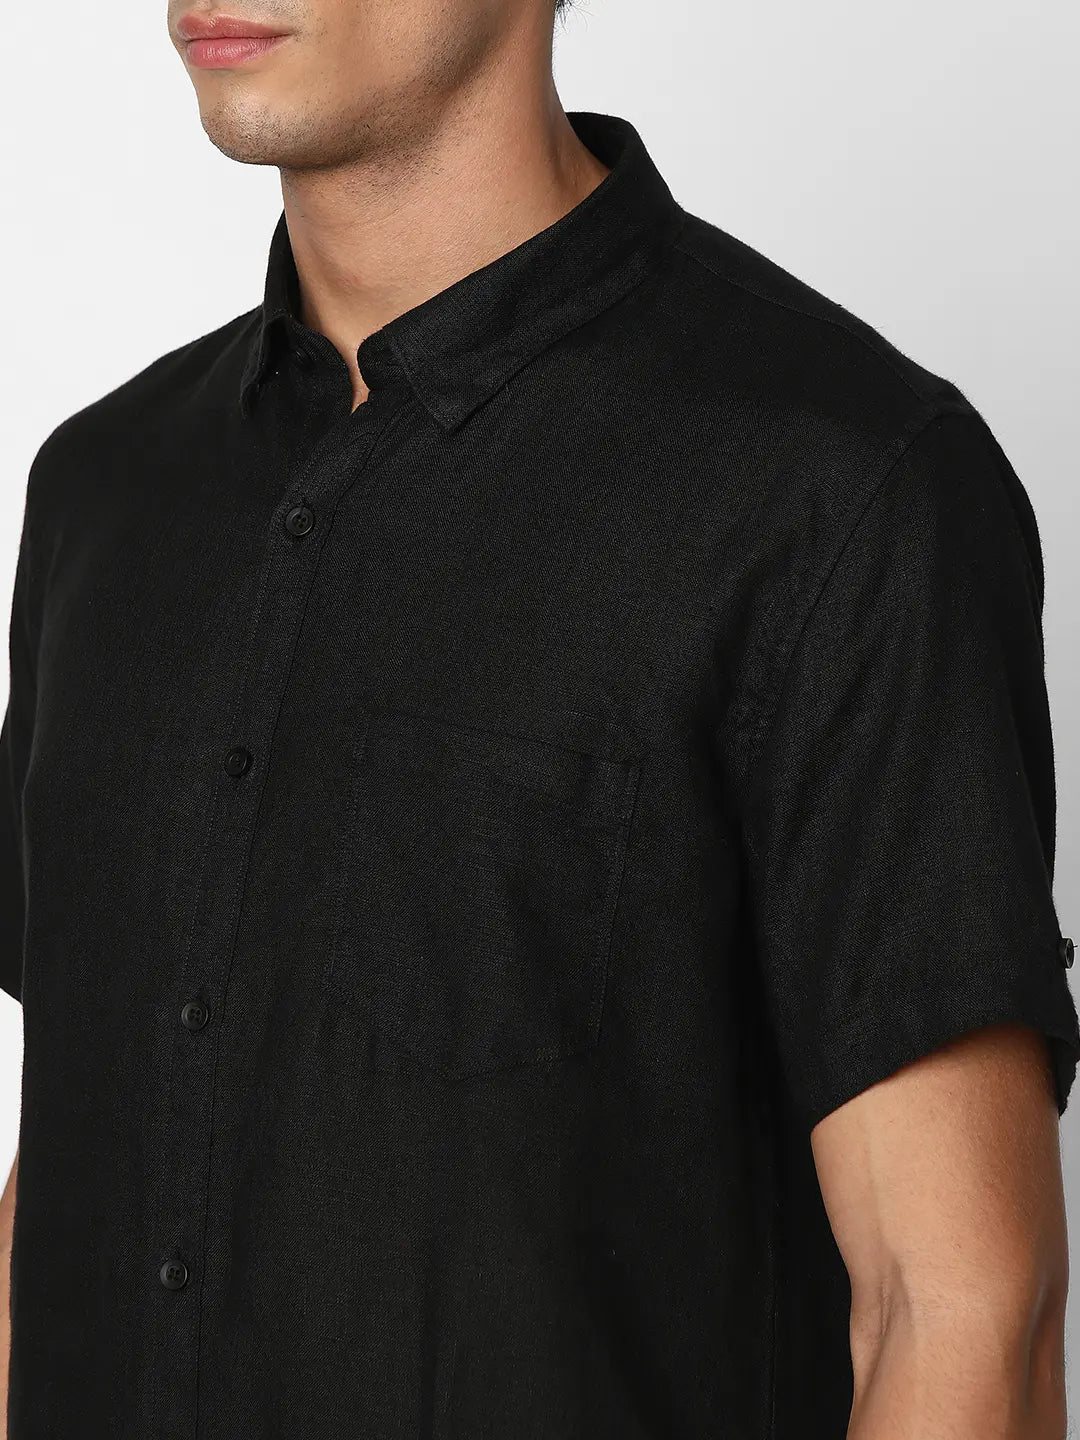 Spykar Men Black Linen Regular Slim Fit Half Sleeve Casual Plain Shirt